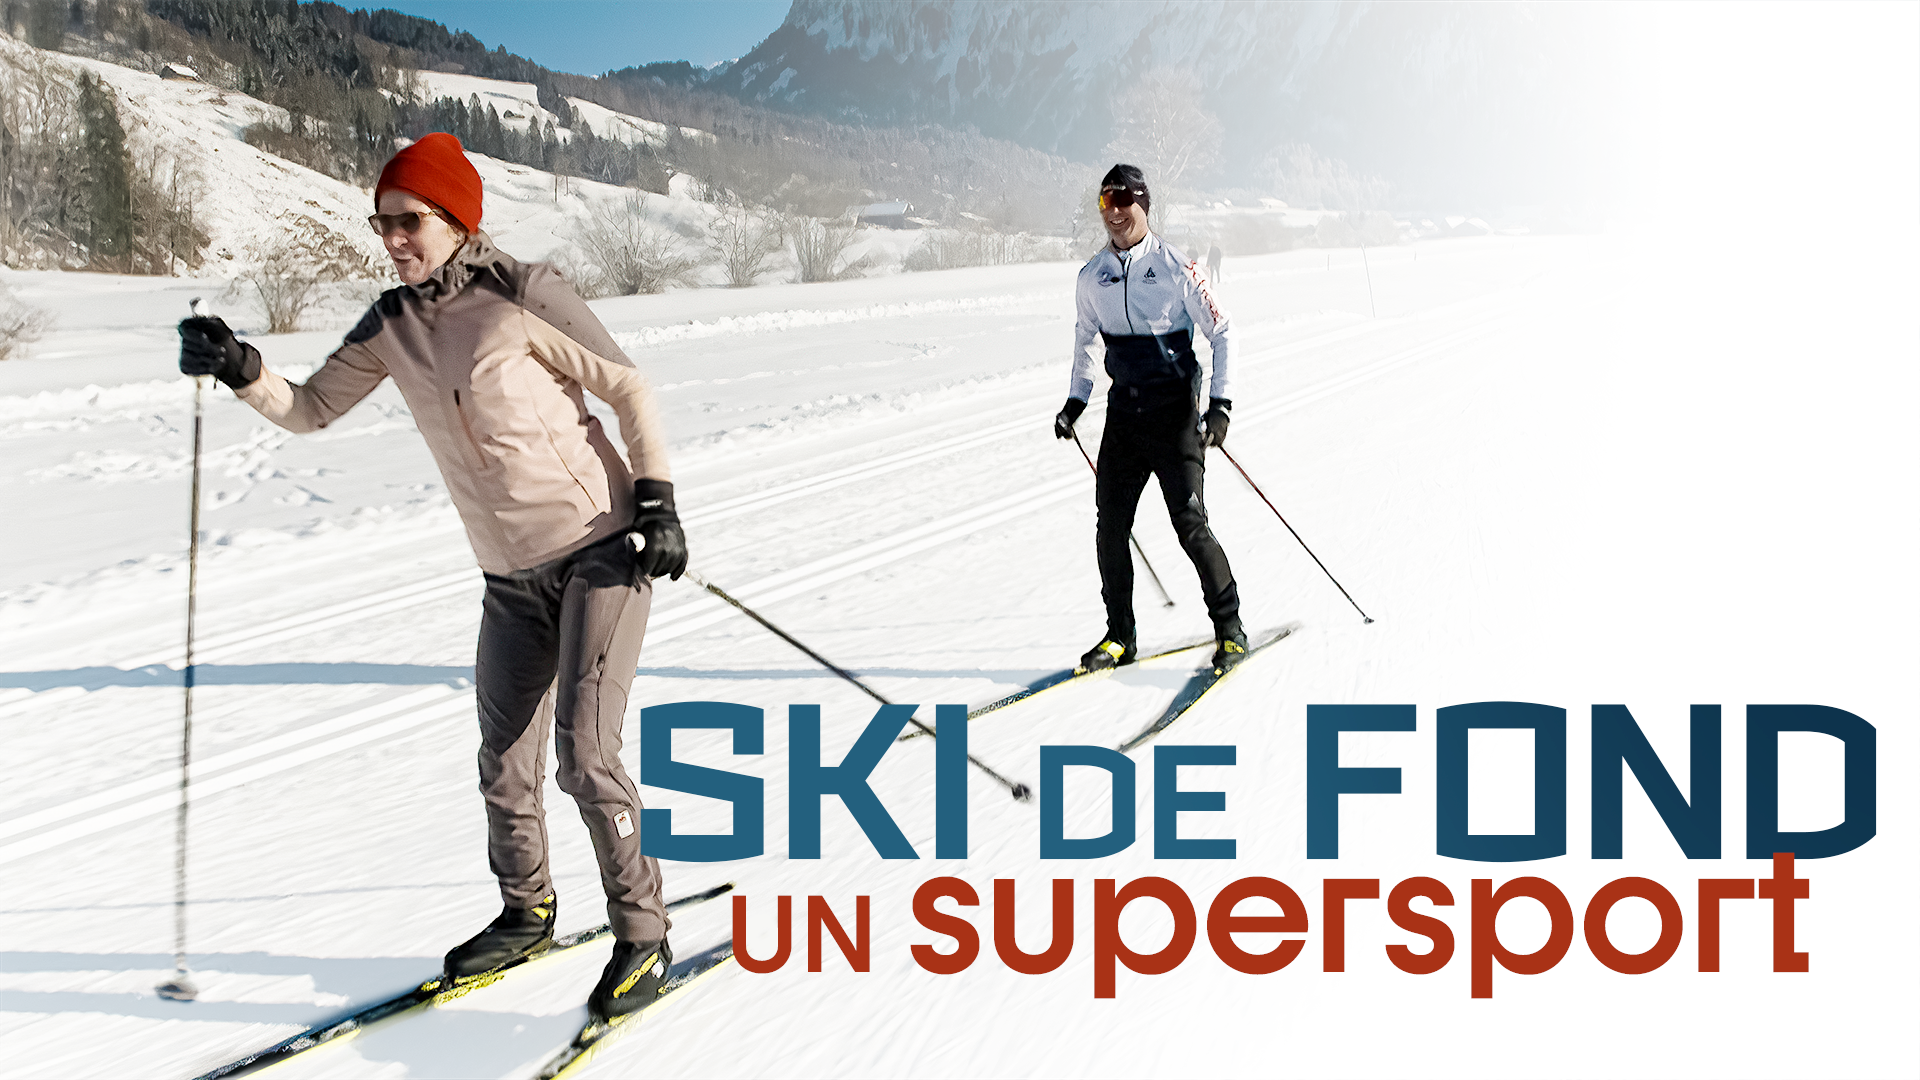 Le ski de fond : un supersport